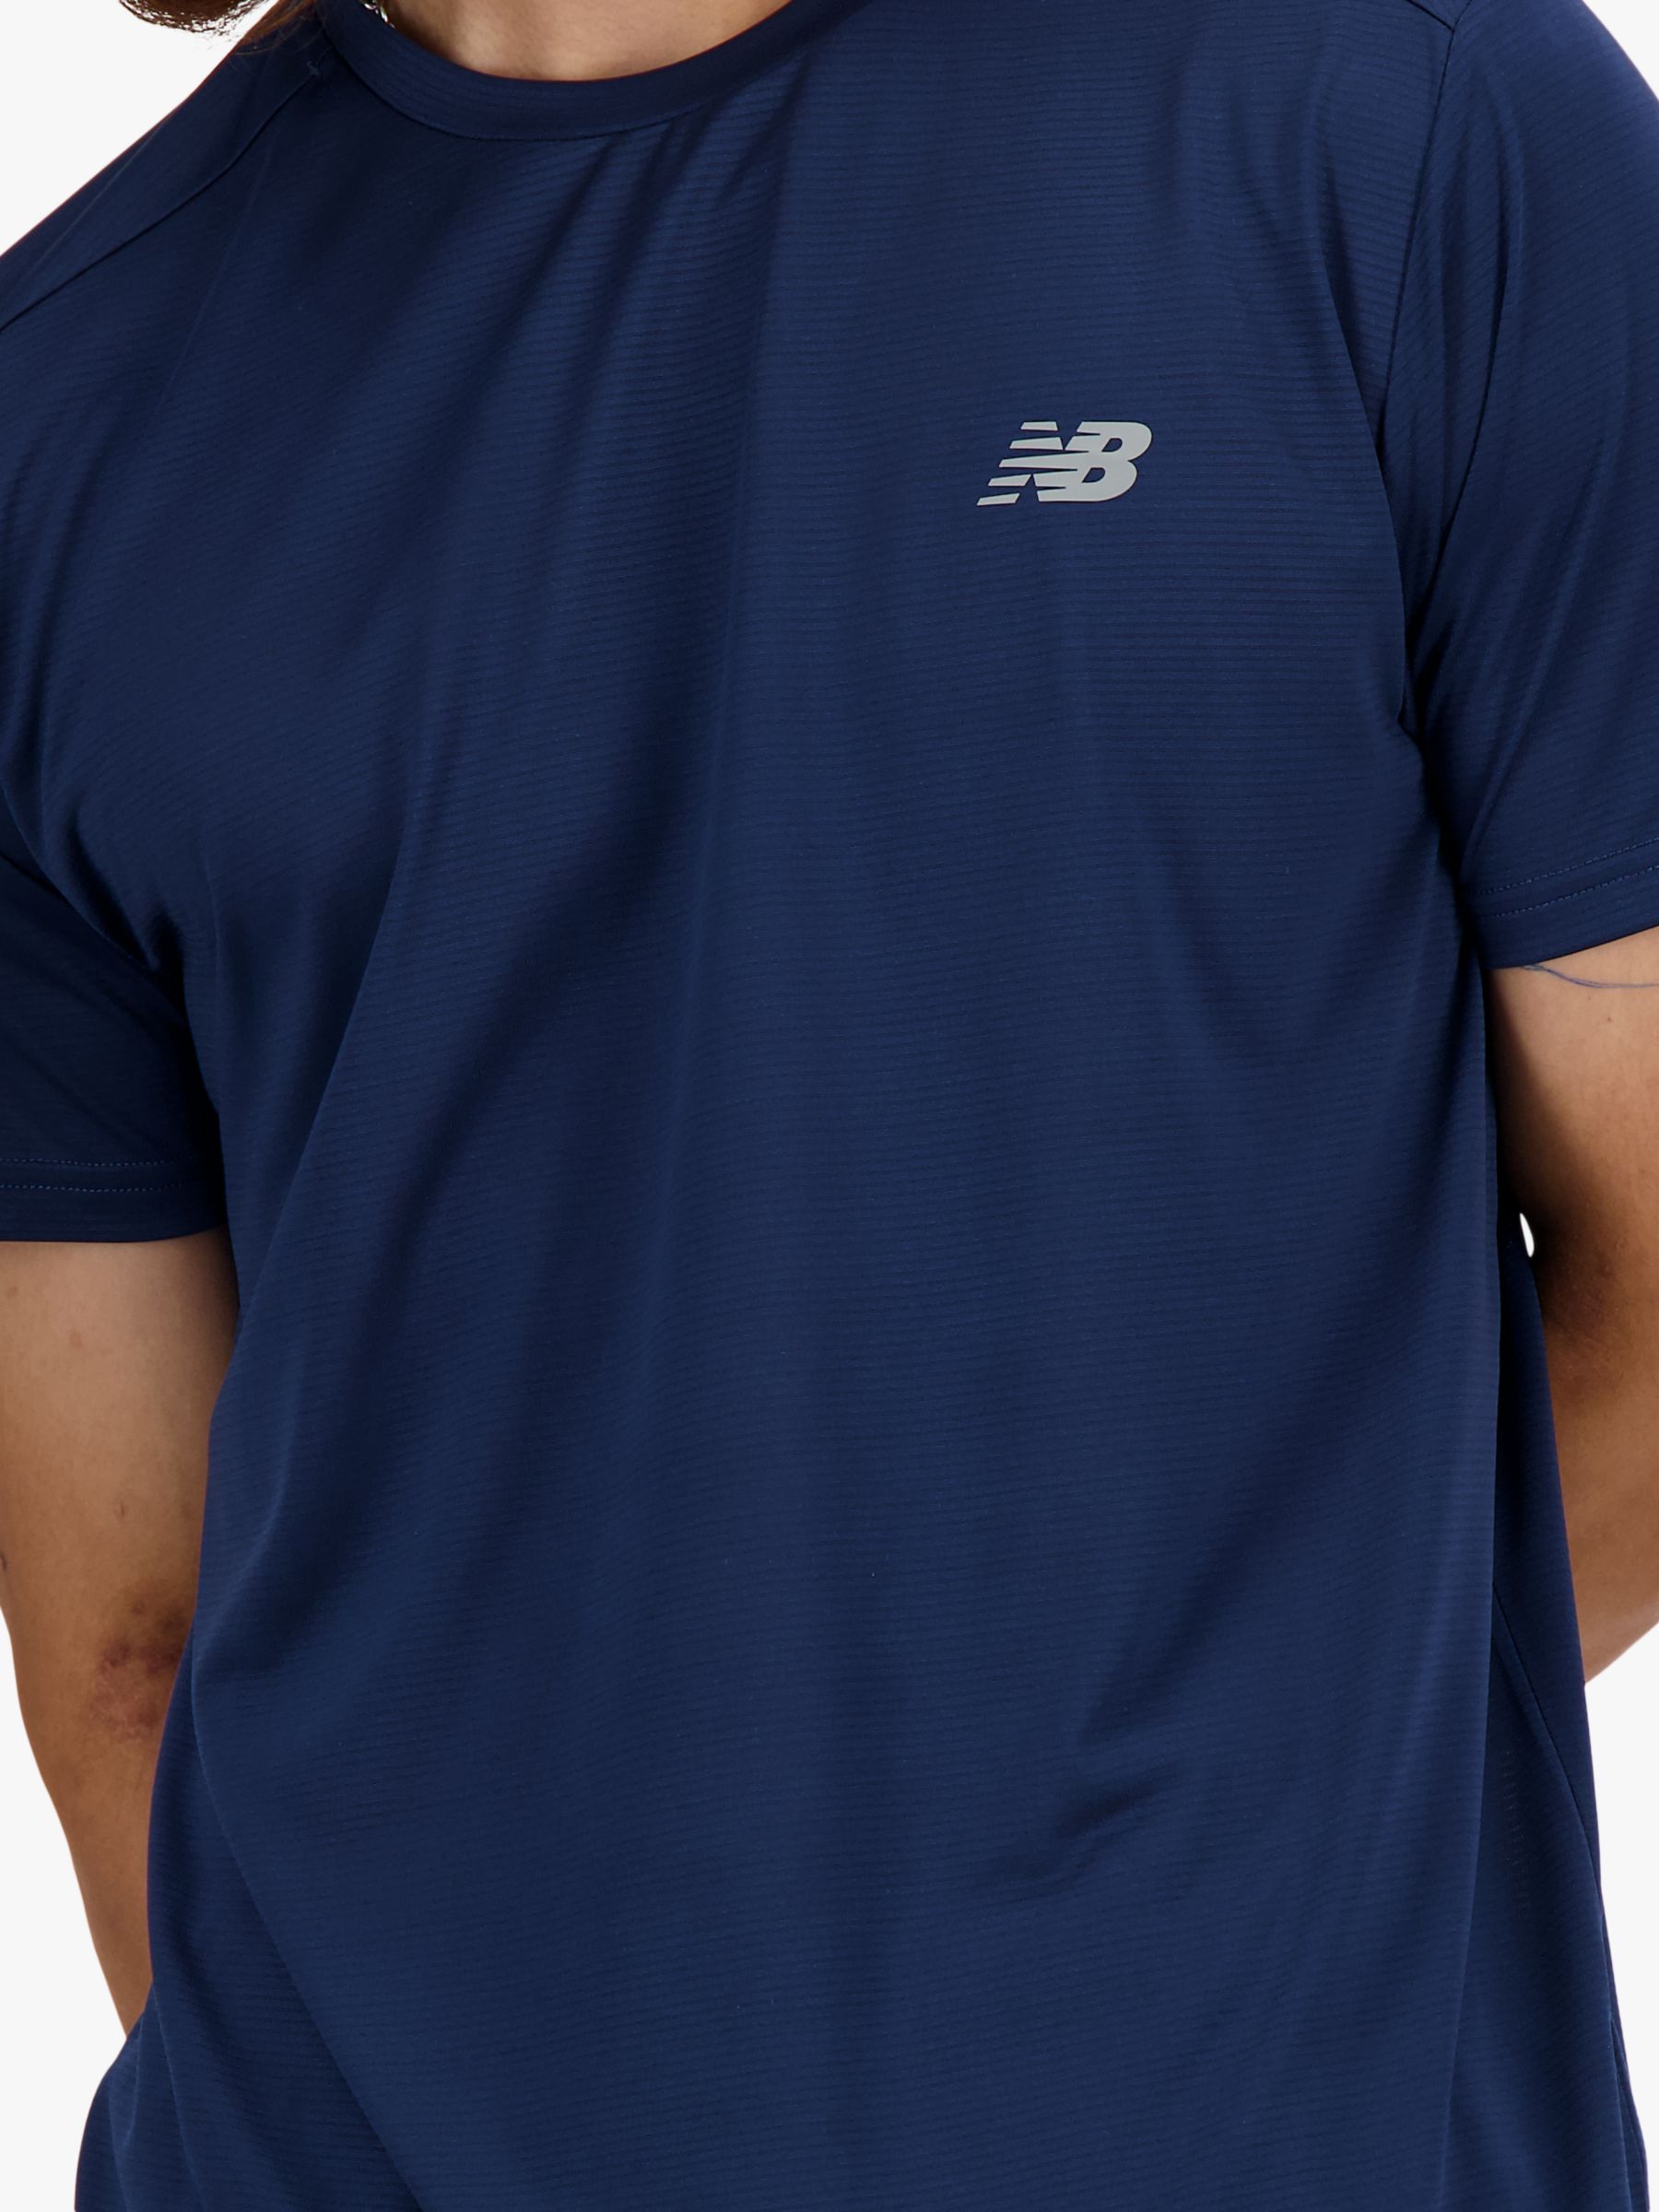 New Balance Lightweight Jersey Short Sleeve T-Shirt, Navy, M